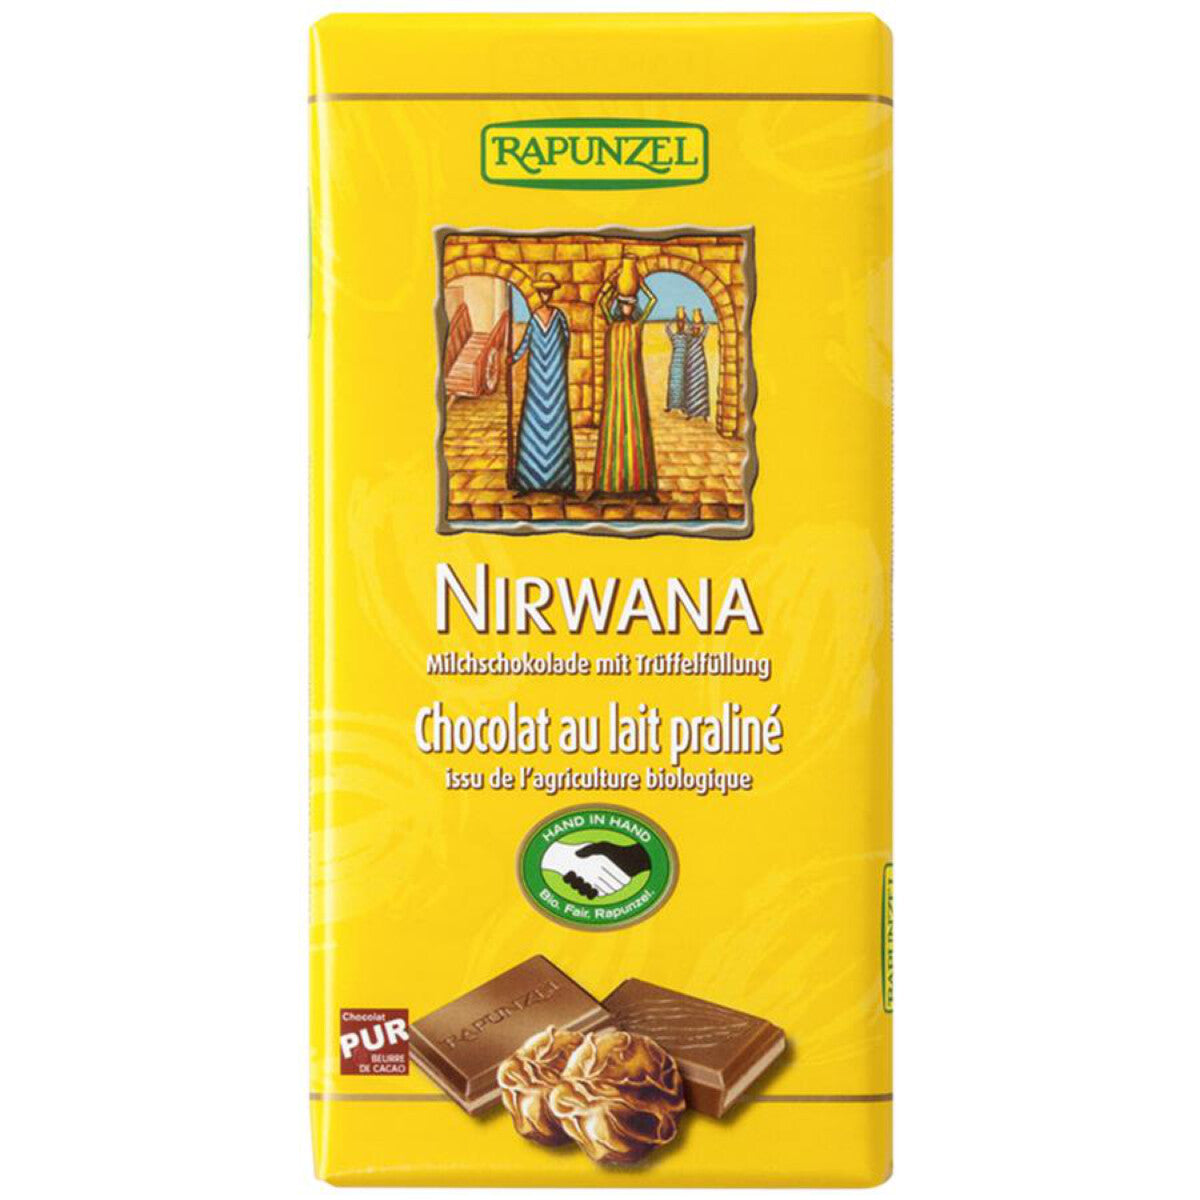 RAPUNZEL Nirwana Milchschokolade Trüffel - 100 g